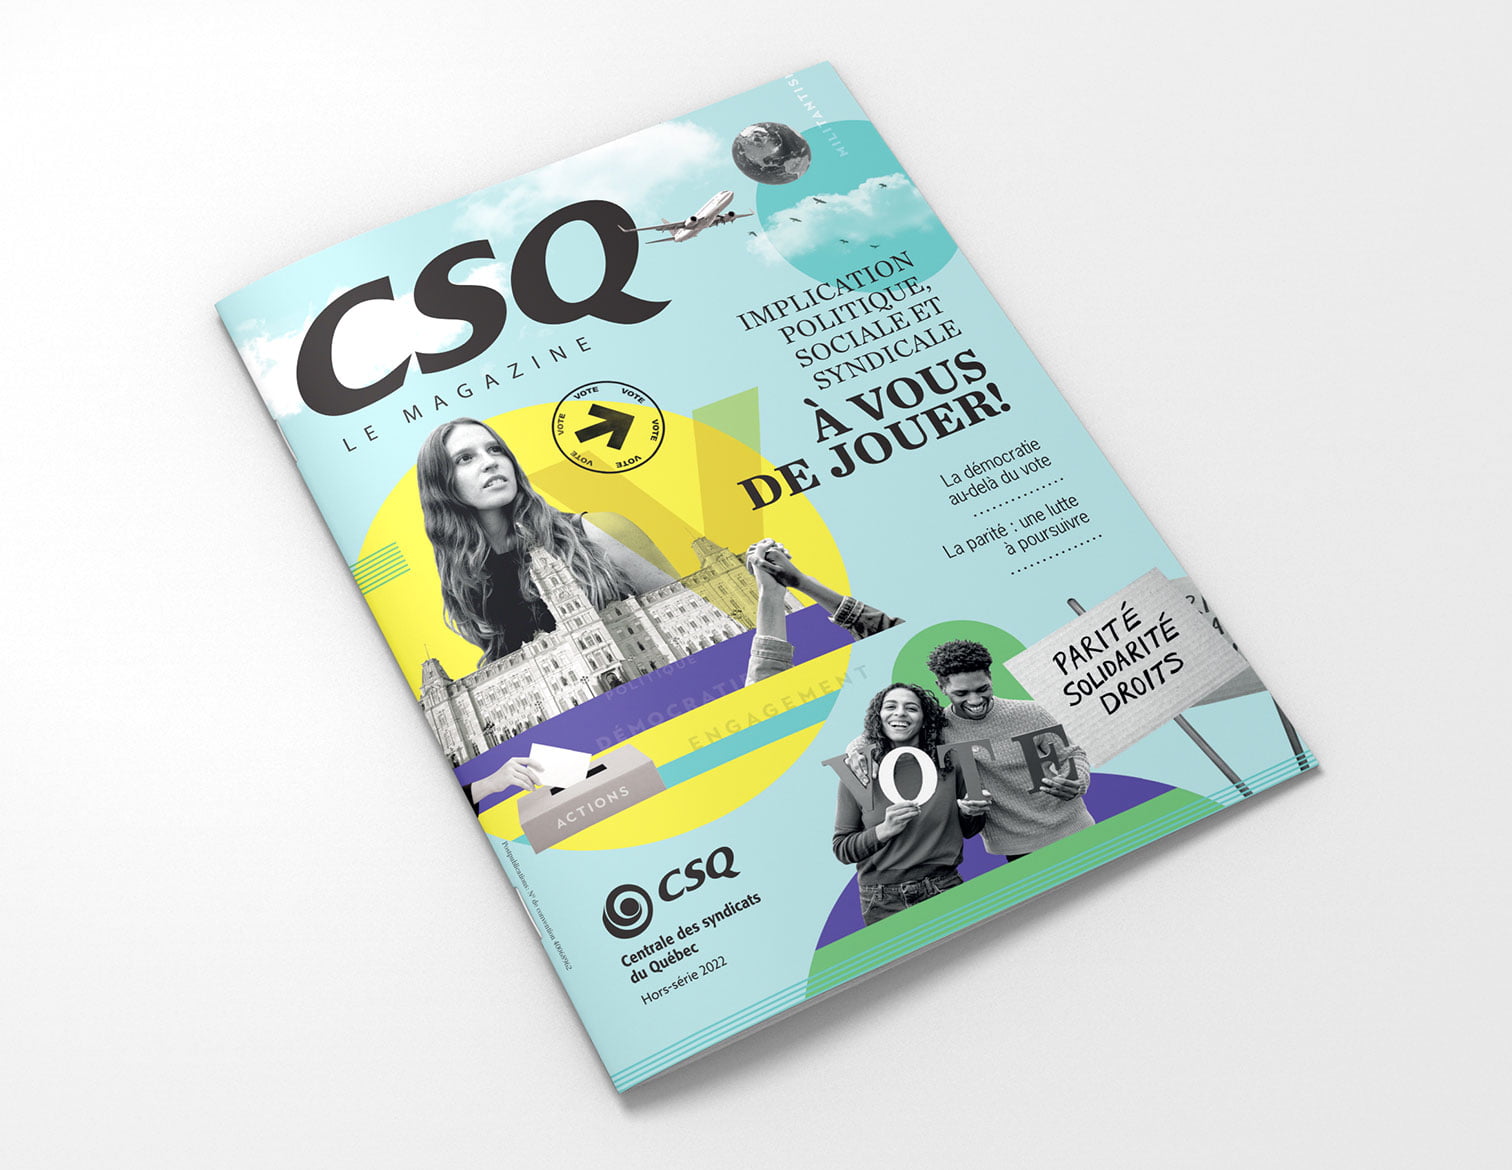 CSQ Le magazine